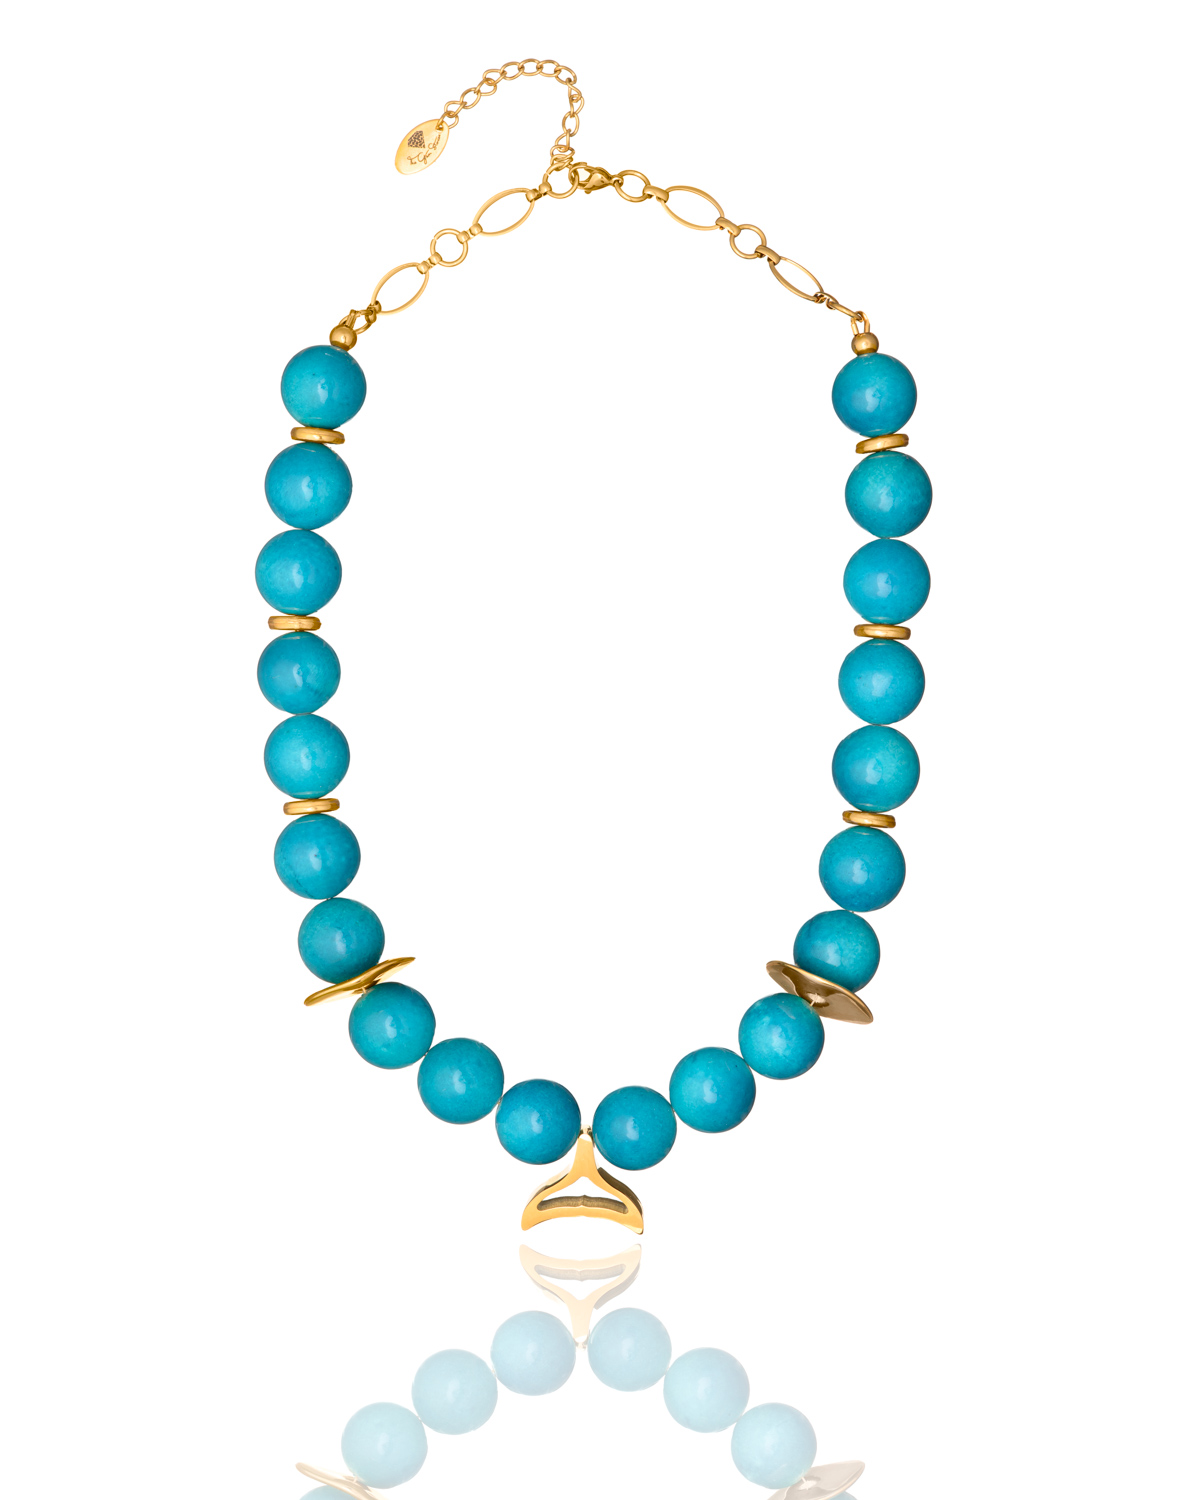 Dynamic Vivid Blue Agate Necklace